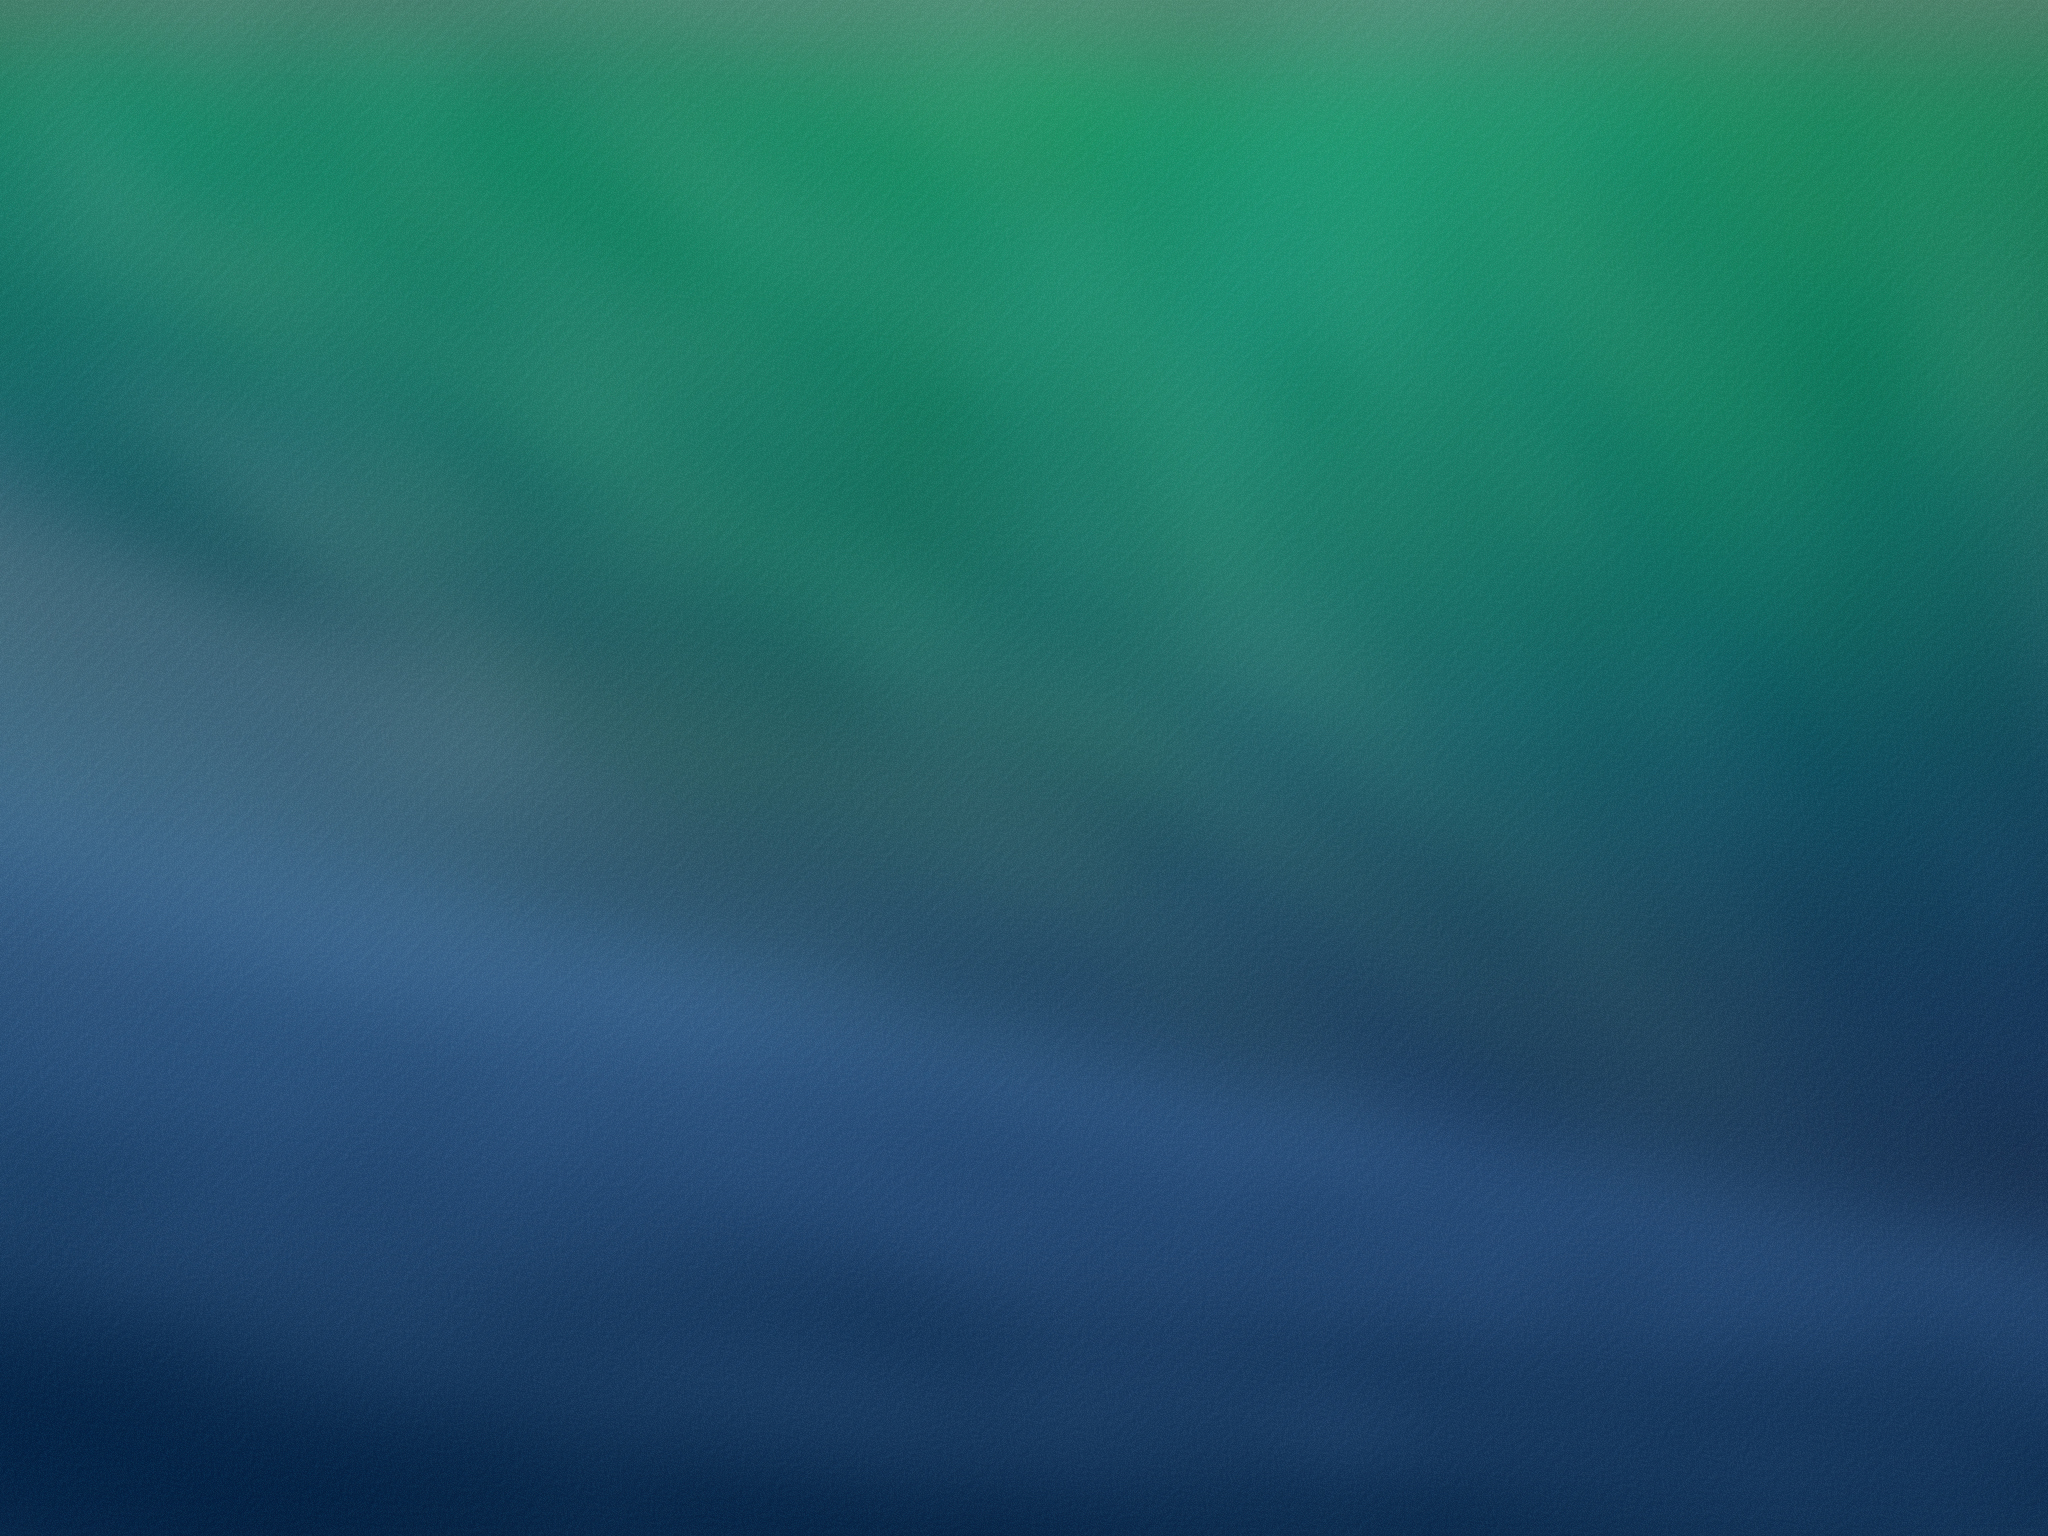 hd ipad wallpaper 2048x1536,blau,grün,aqua,türkis,himmel